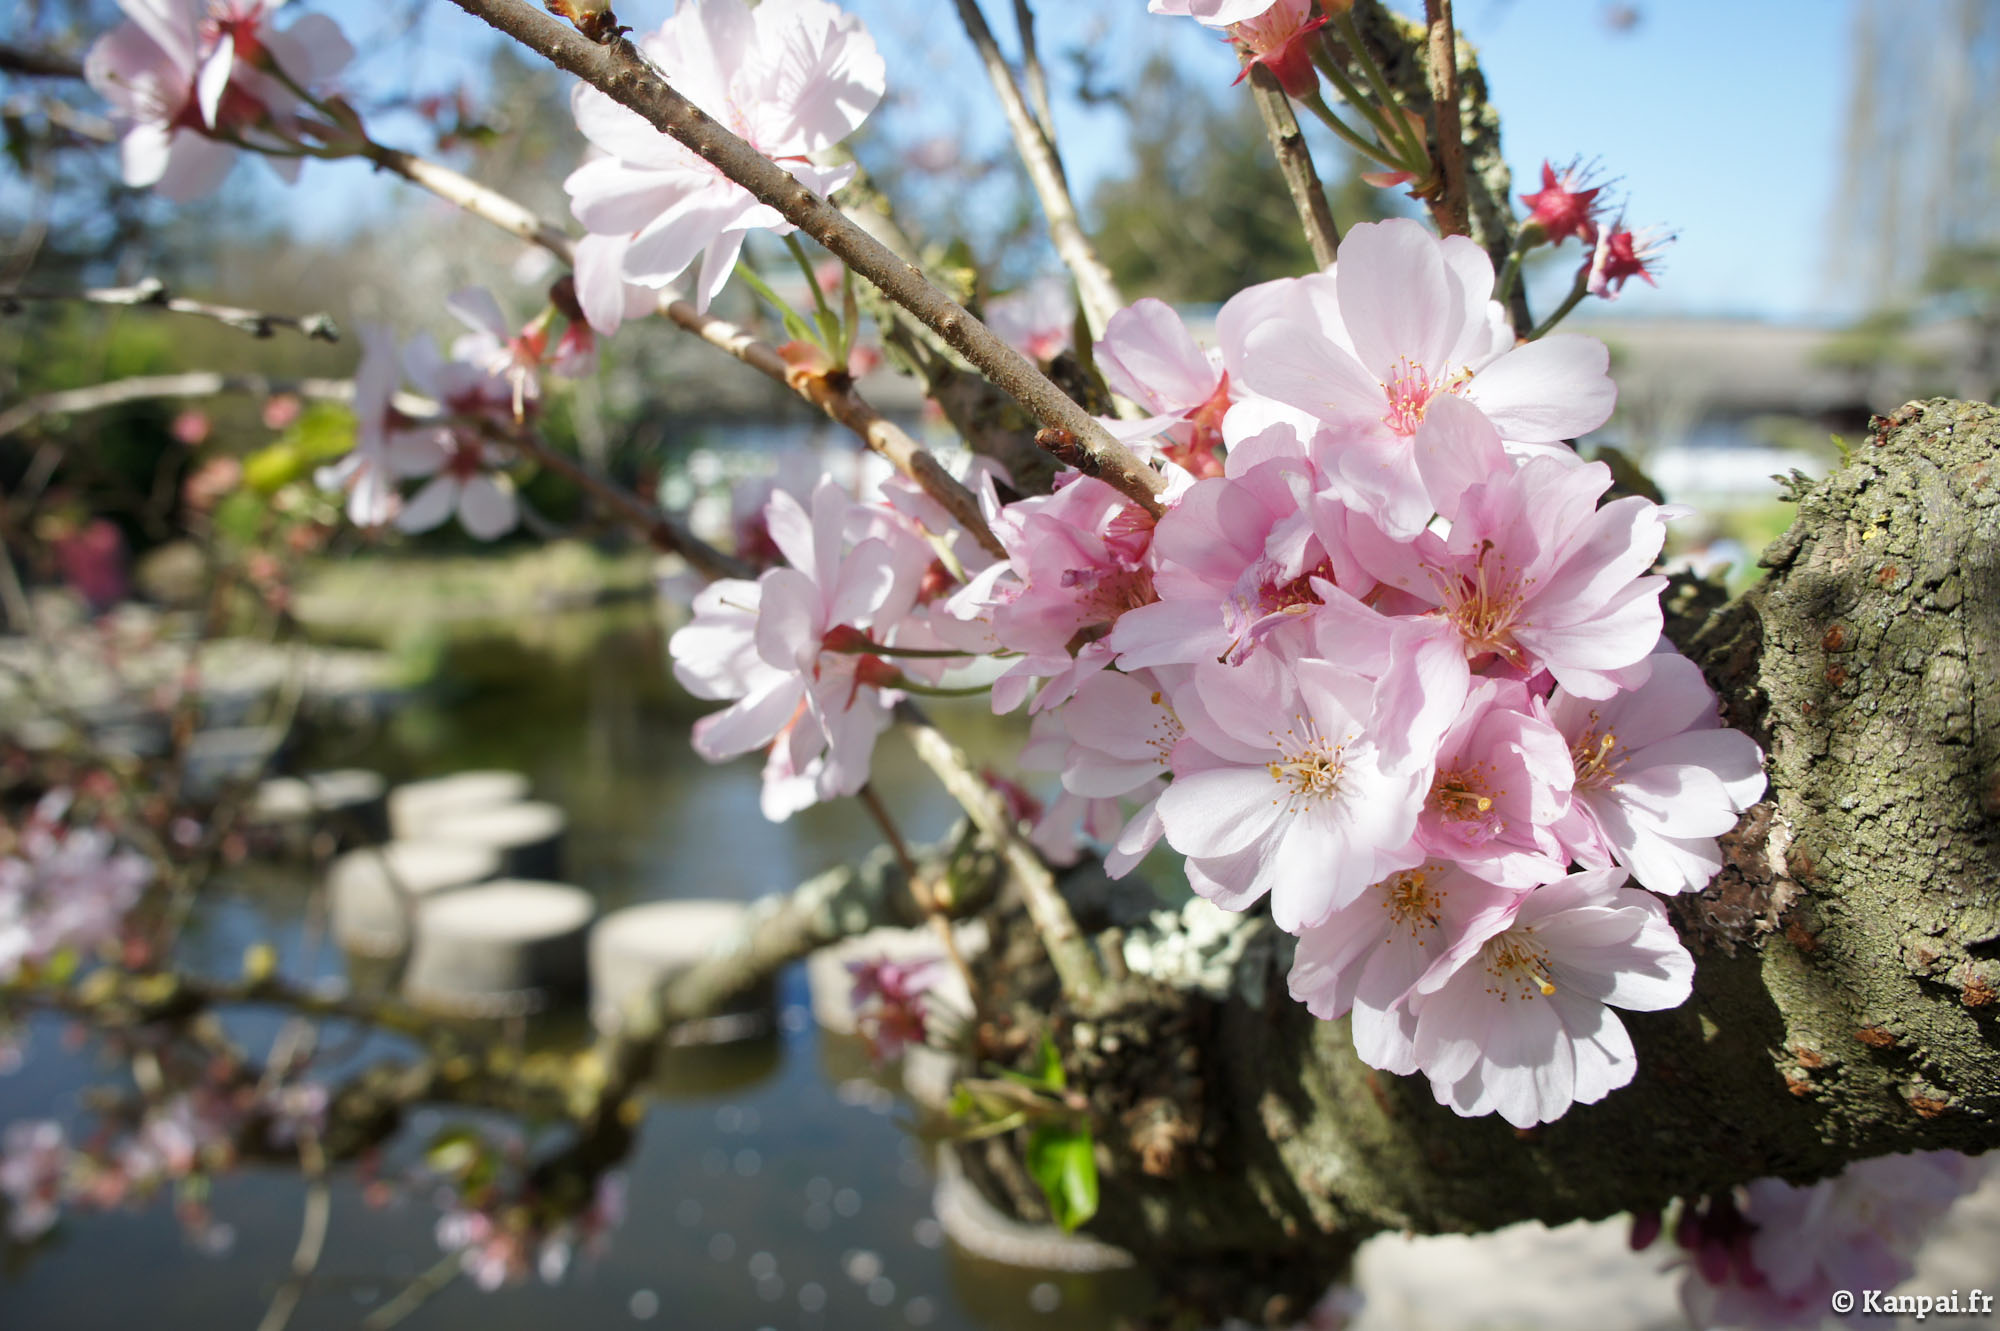  Sakura  japonais du japon et des fleurs 